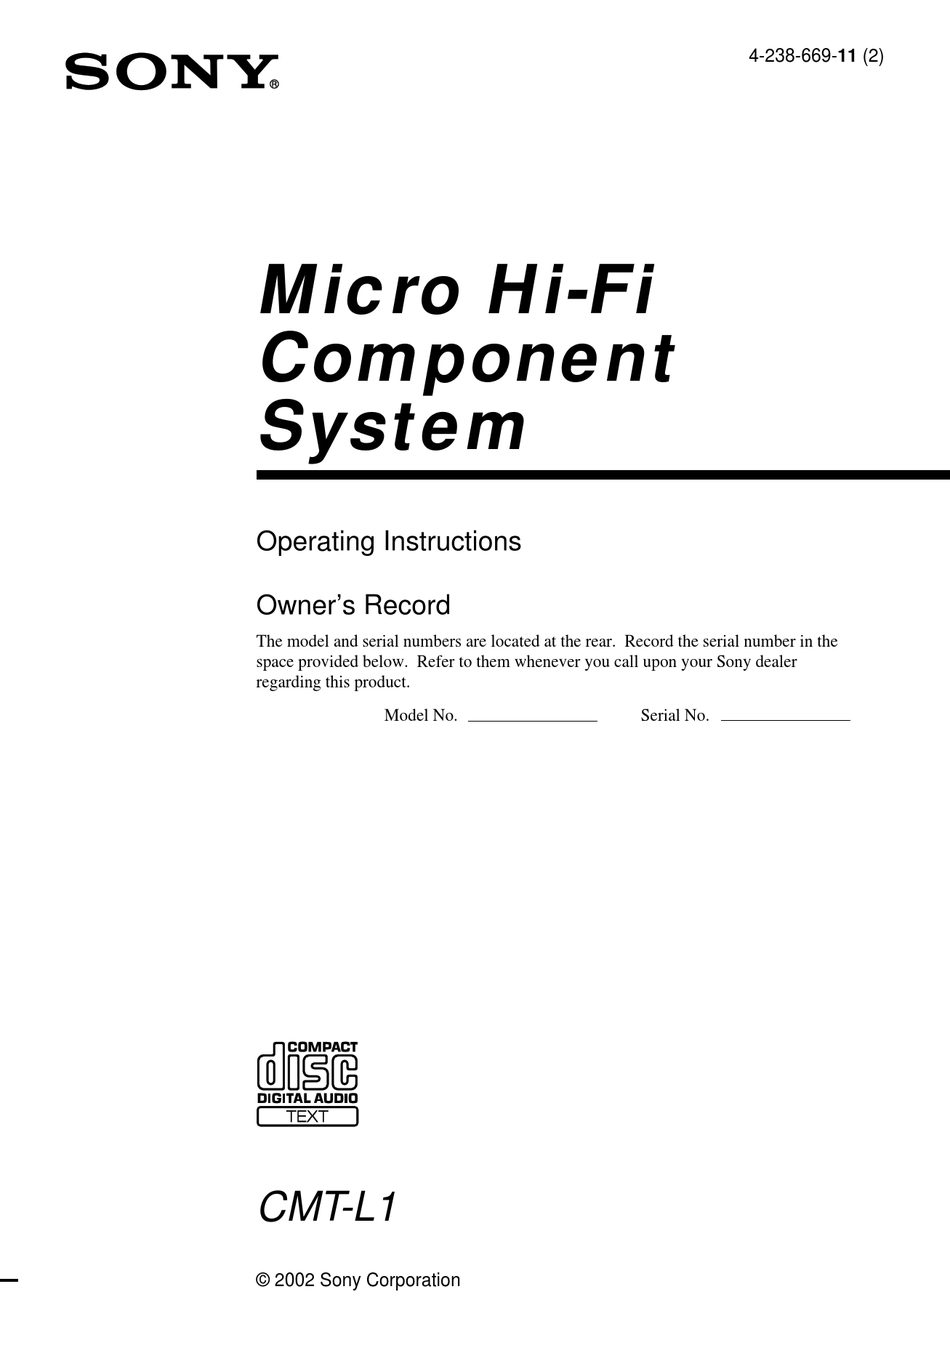 CMT Sony Manuale di Istruzioni Cmt M11C Componente Sistema #2527 